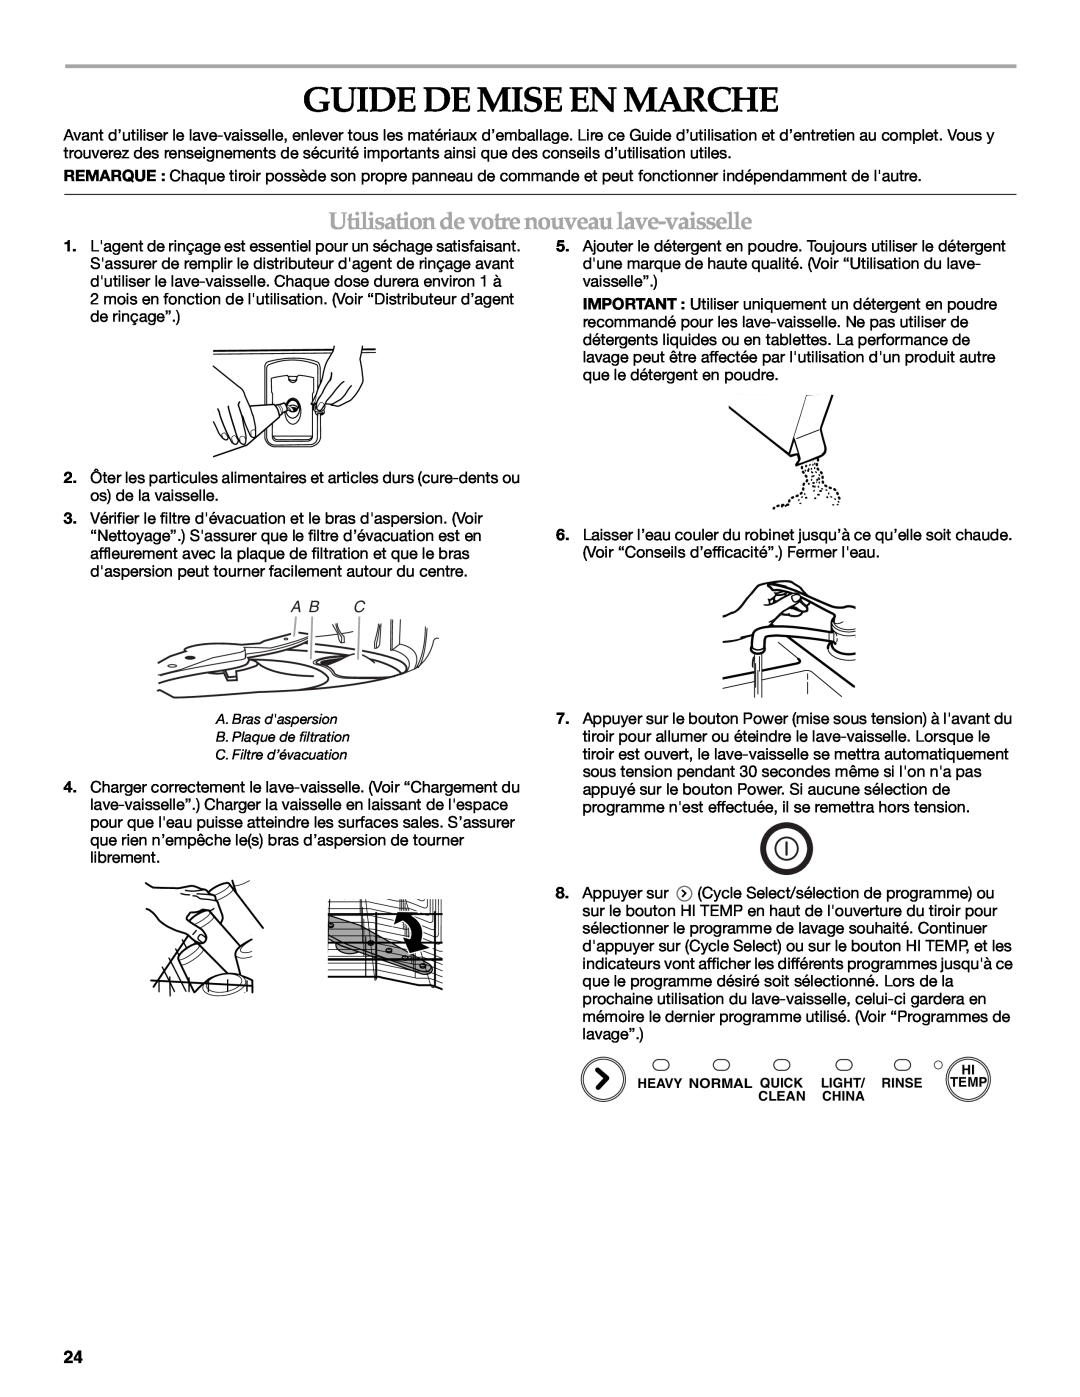 KitchenAid KUDD01DPPA, 8573754 manual Guide De Mise En Marche, Utilisation de votre nouveau lave-vaisselle, A B C 